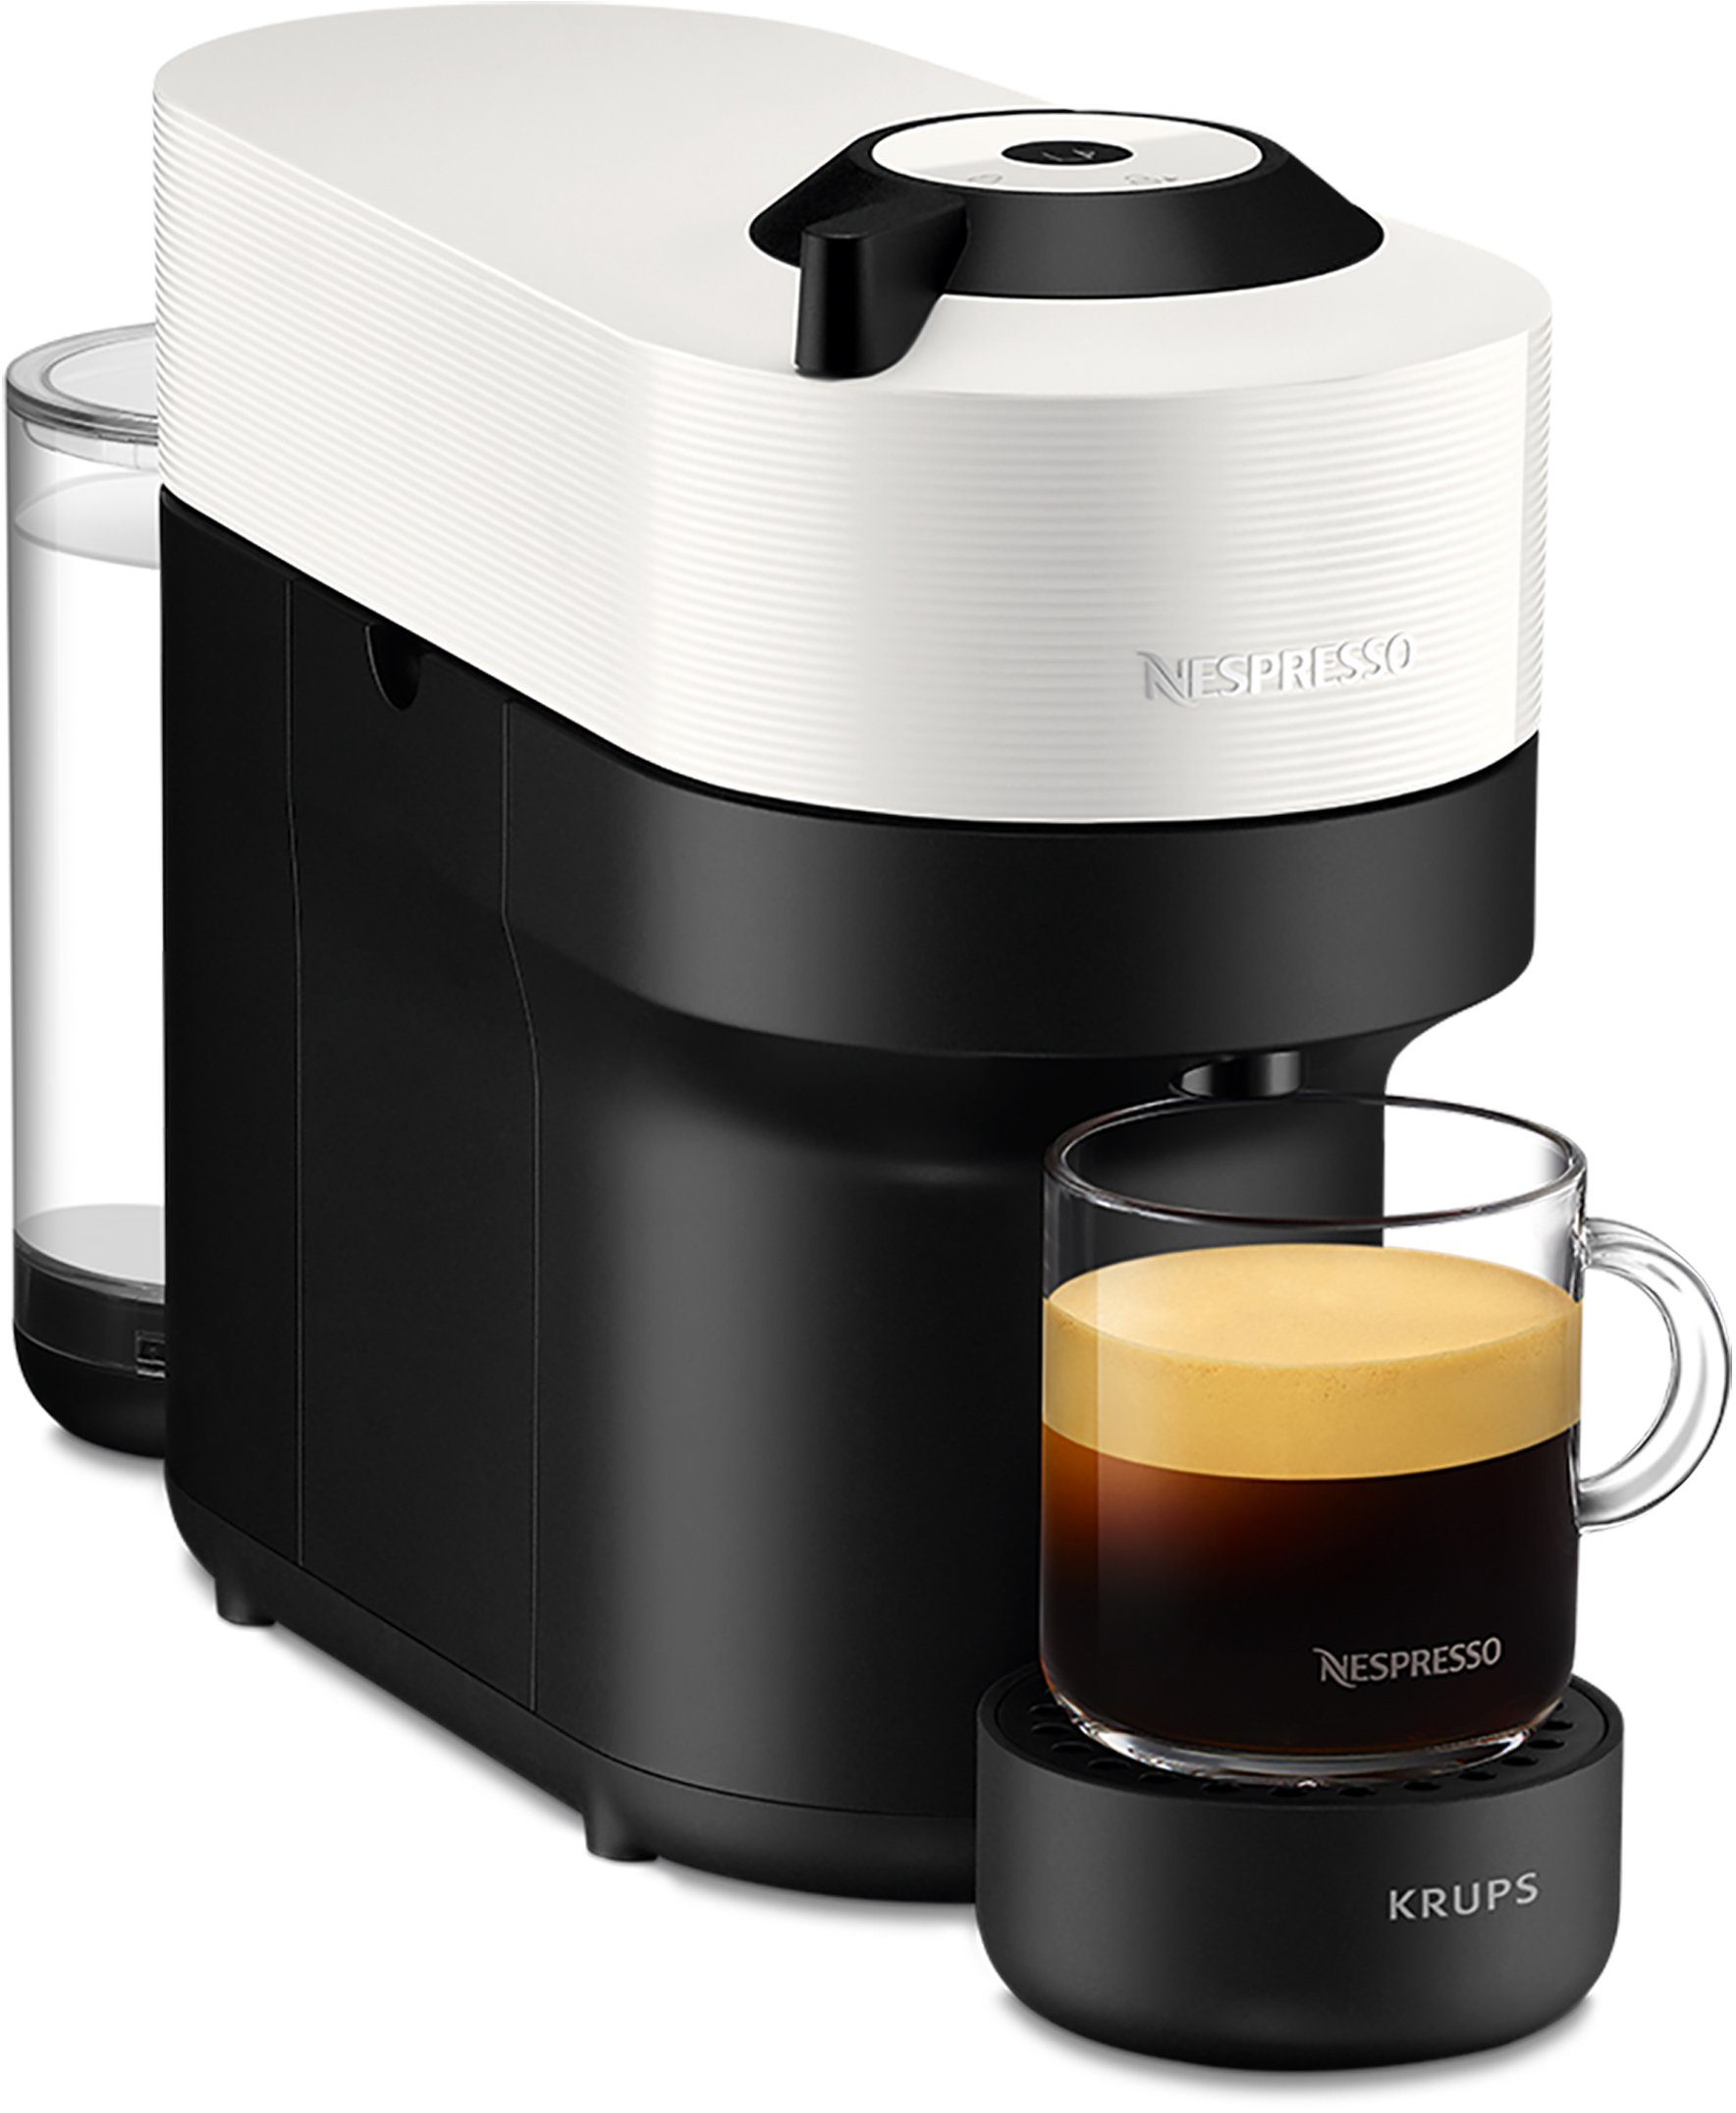 Nespresso Koffiecapsulemachine Vertuo Pop XN9201 van Krups, inhoud 560 ml, aut. capsule-herkenning, 